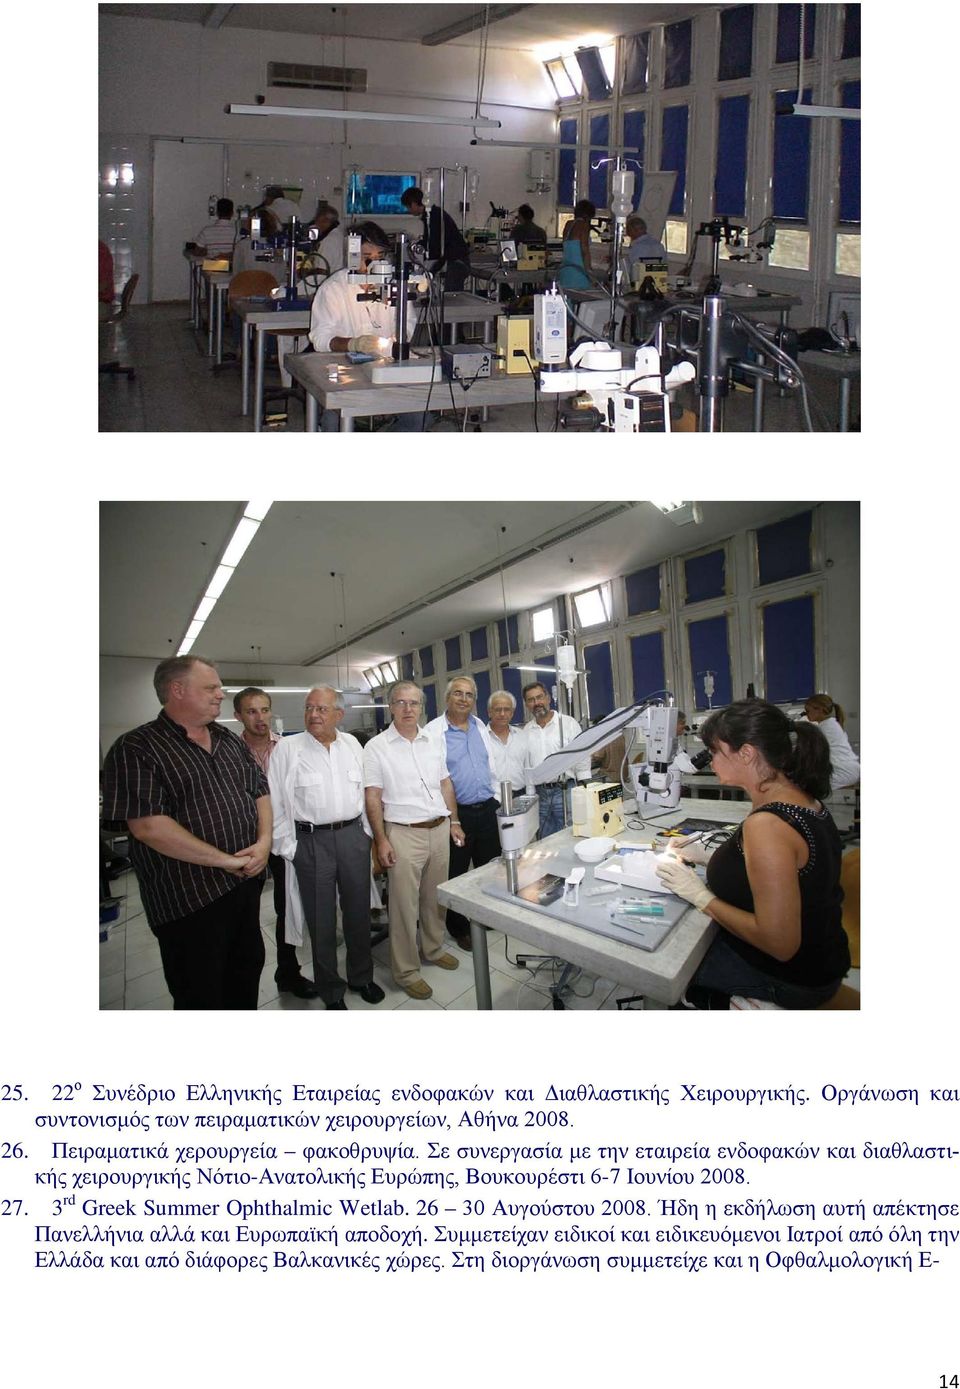 Σε συνεργασία με την εταιρεία ενδοφακών και διαθλαστικής χειρουργικής Νότιο-Ανατολικής Ευρώπης, Βουκουρέστι 6-7 Ιουνίου 2008. 27.